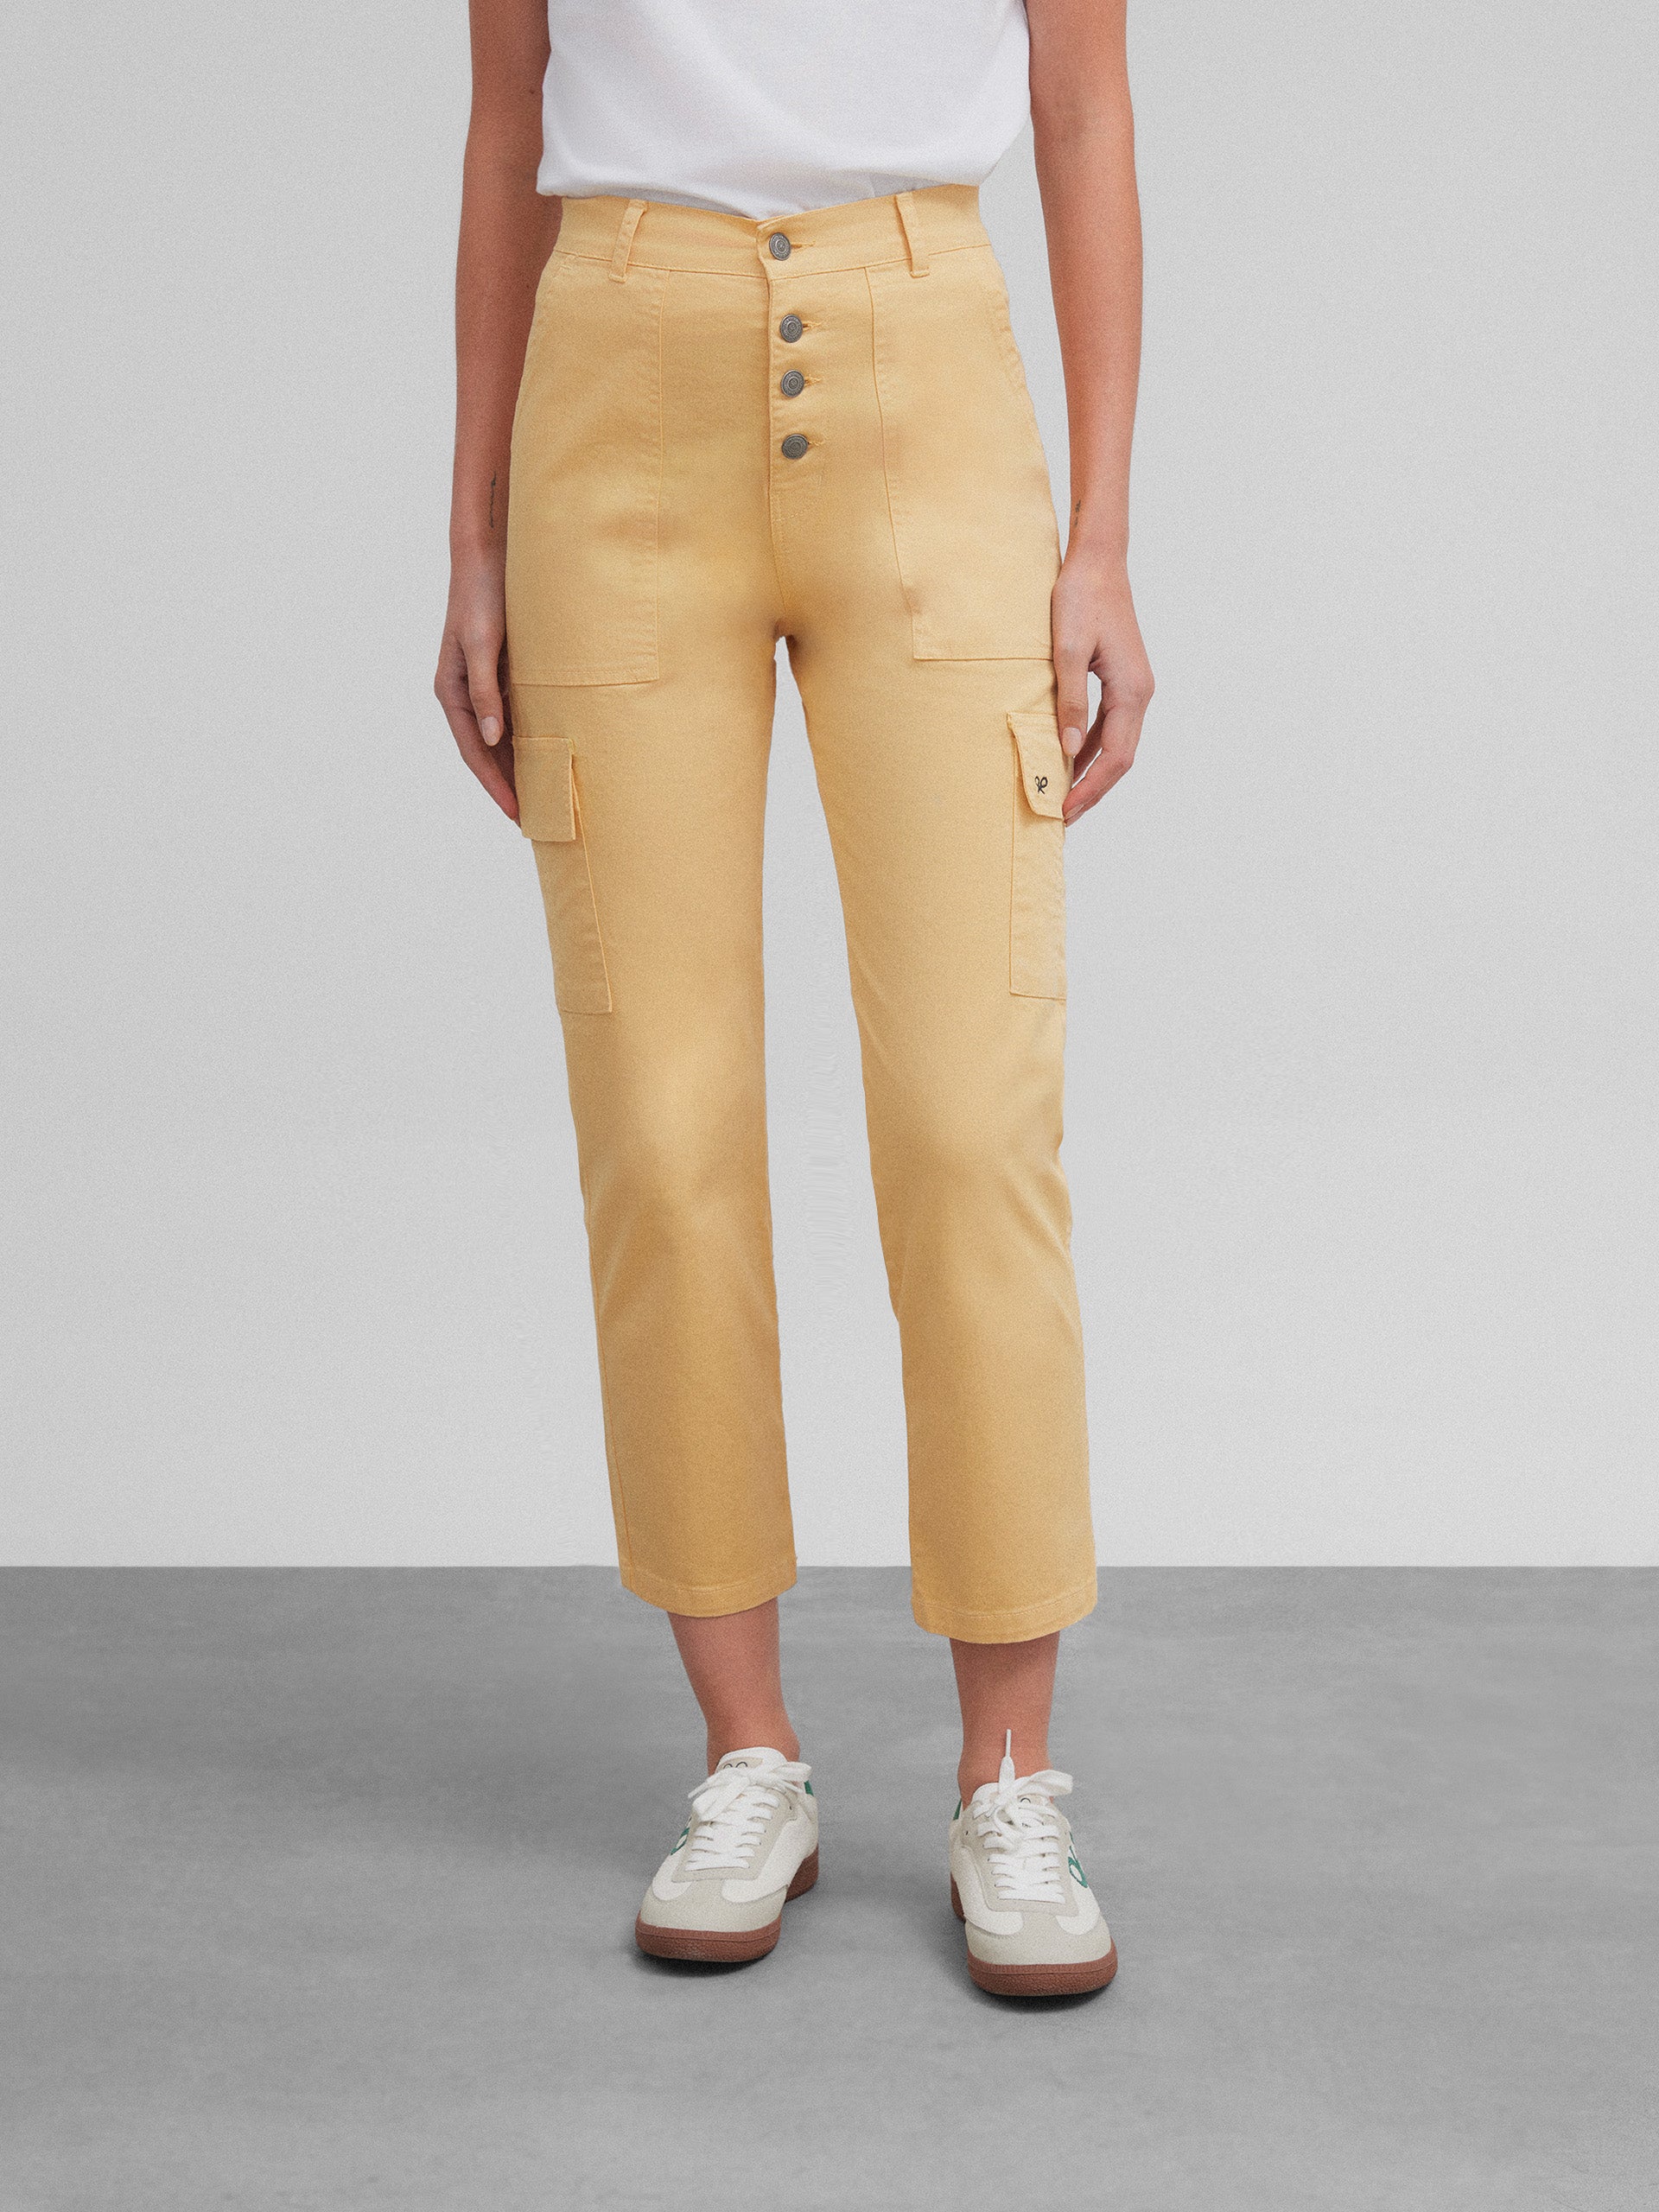 Women's yellow cargo denim pants